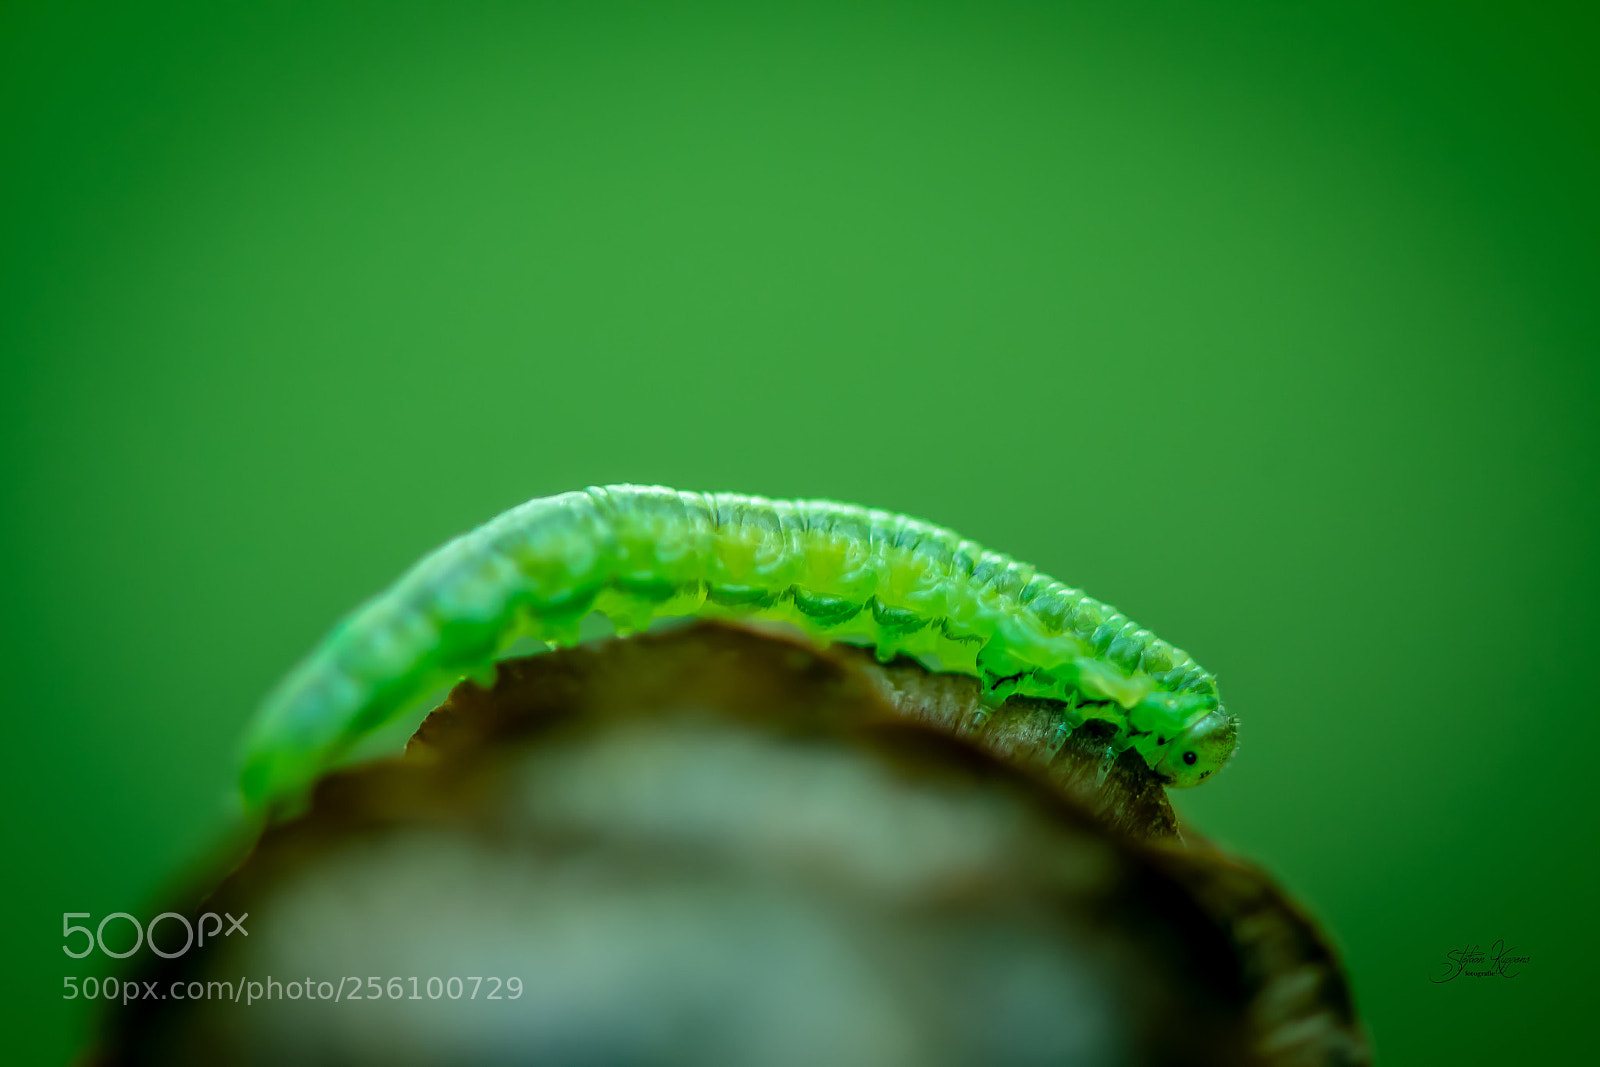 Nikon D500 sample photo. Green caterpillar photography